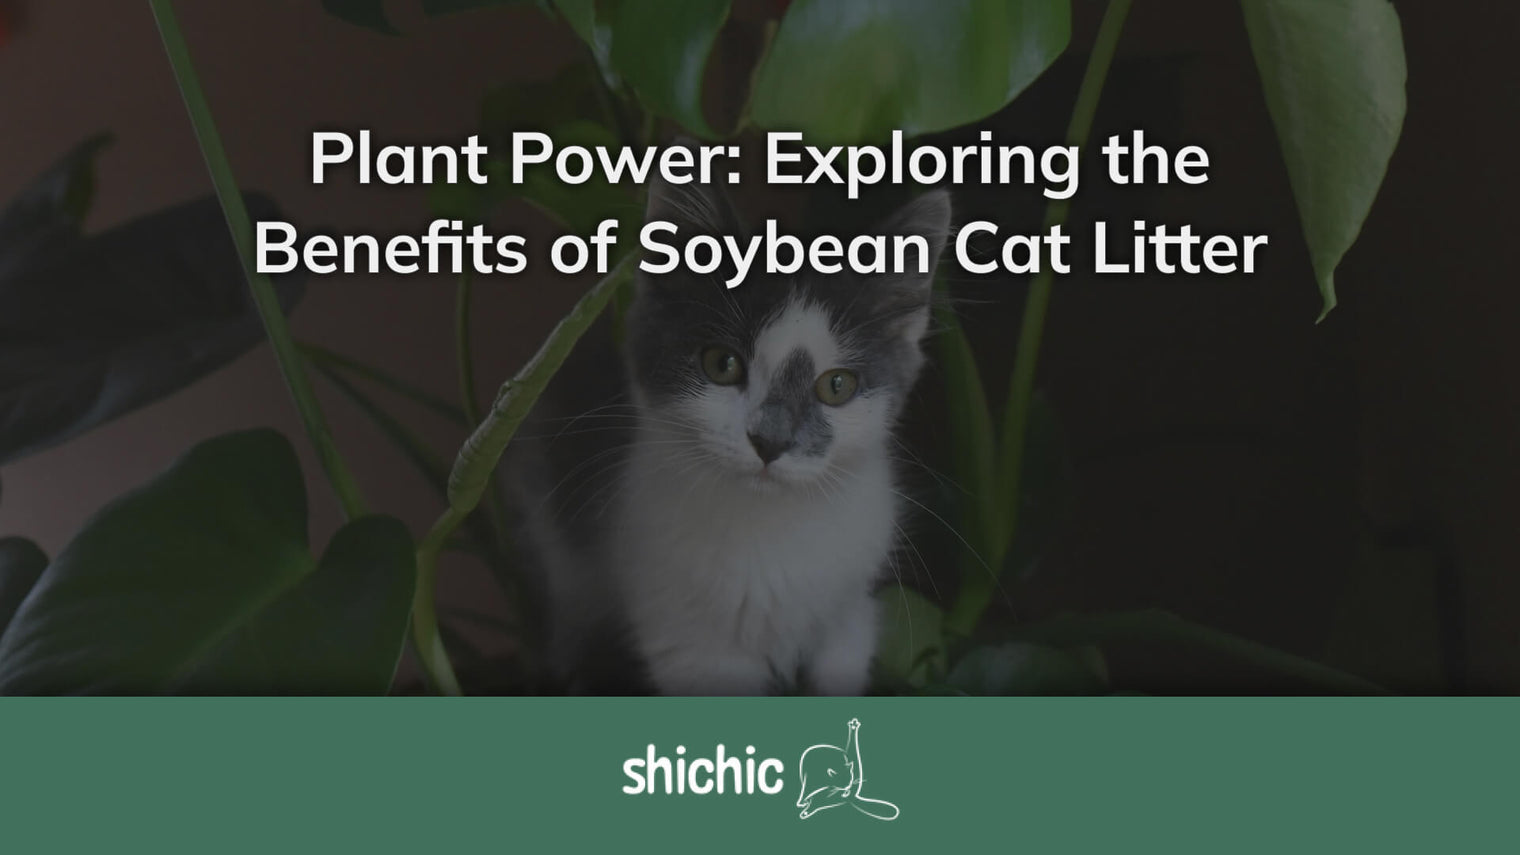 soybean cat litter